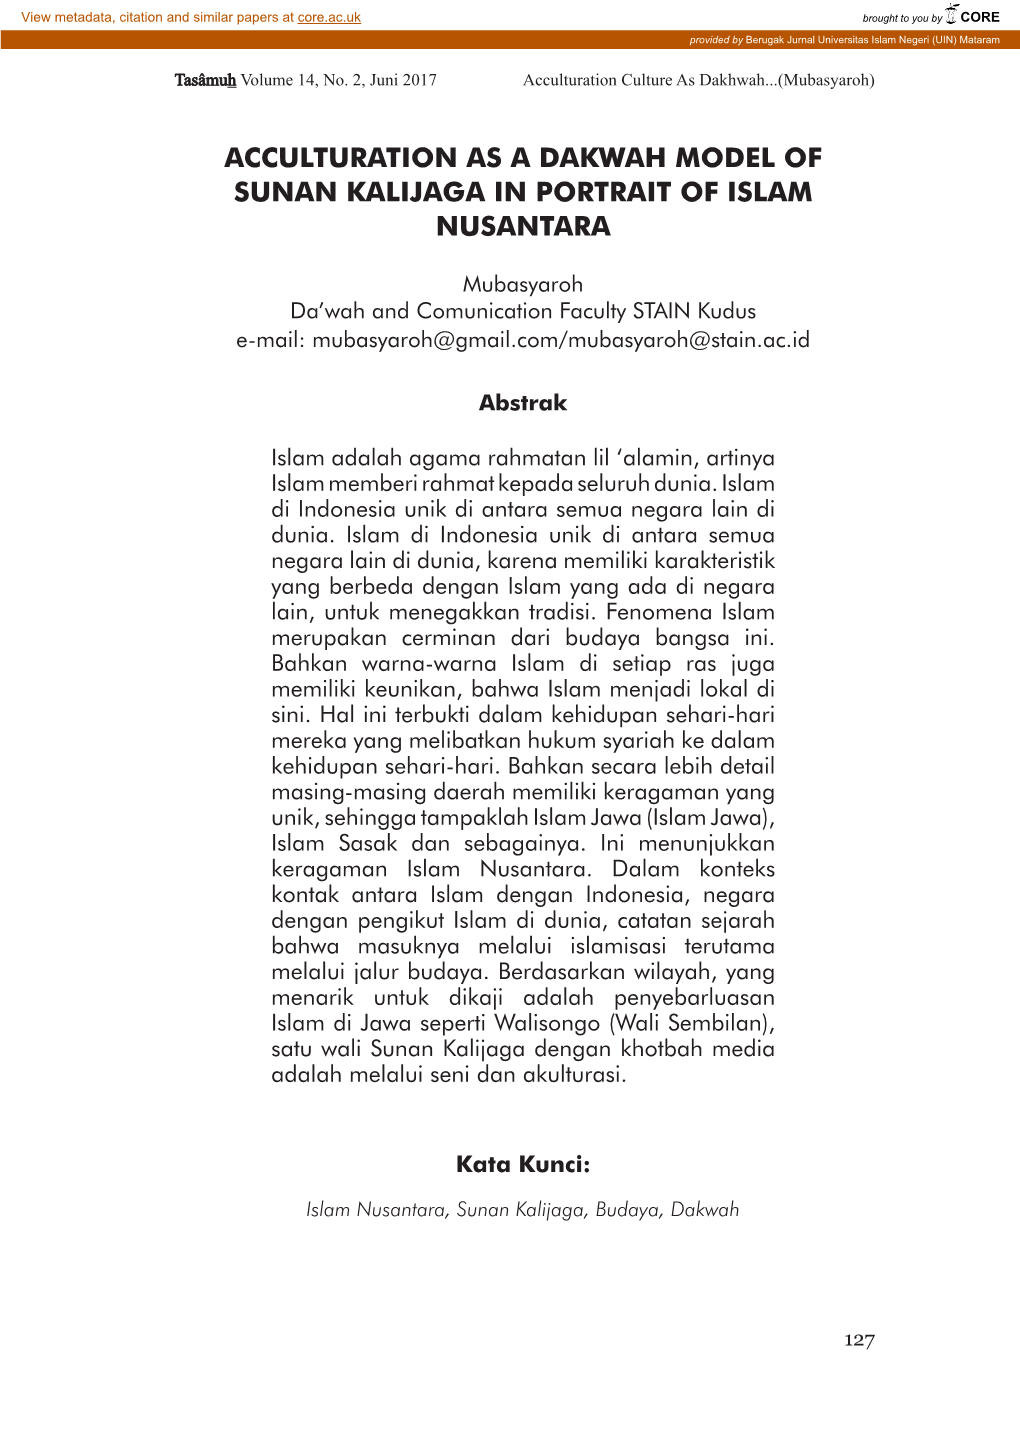 Acculturation As a Dakwah Model of Sunan Kalijaga in Portrait of Islam Nusantara